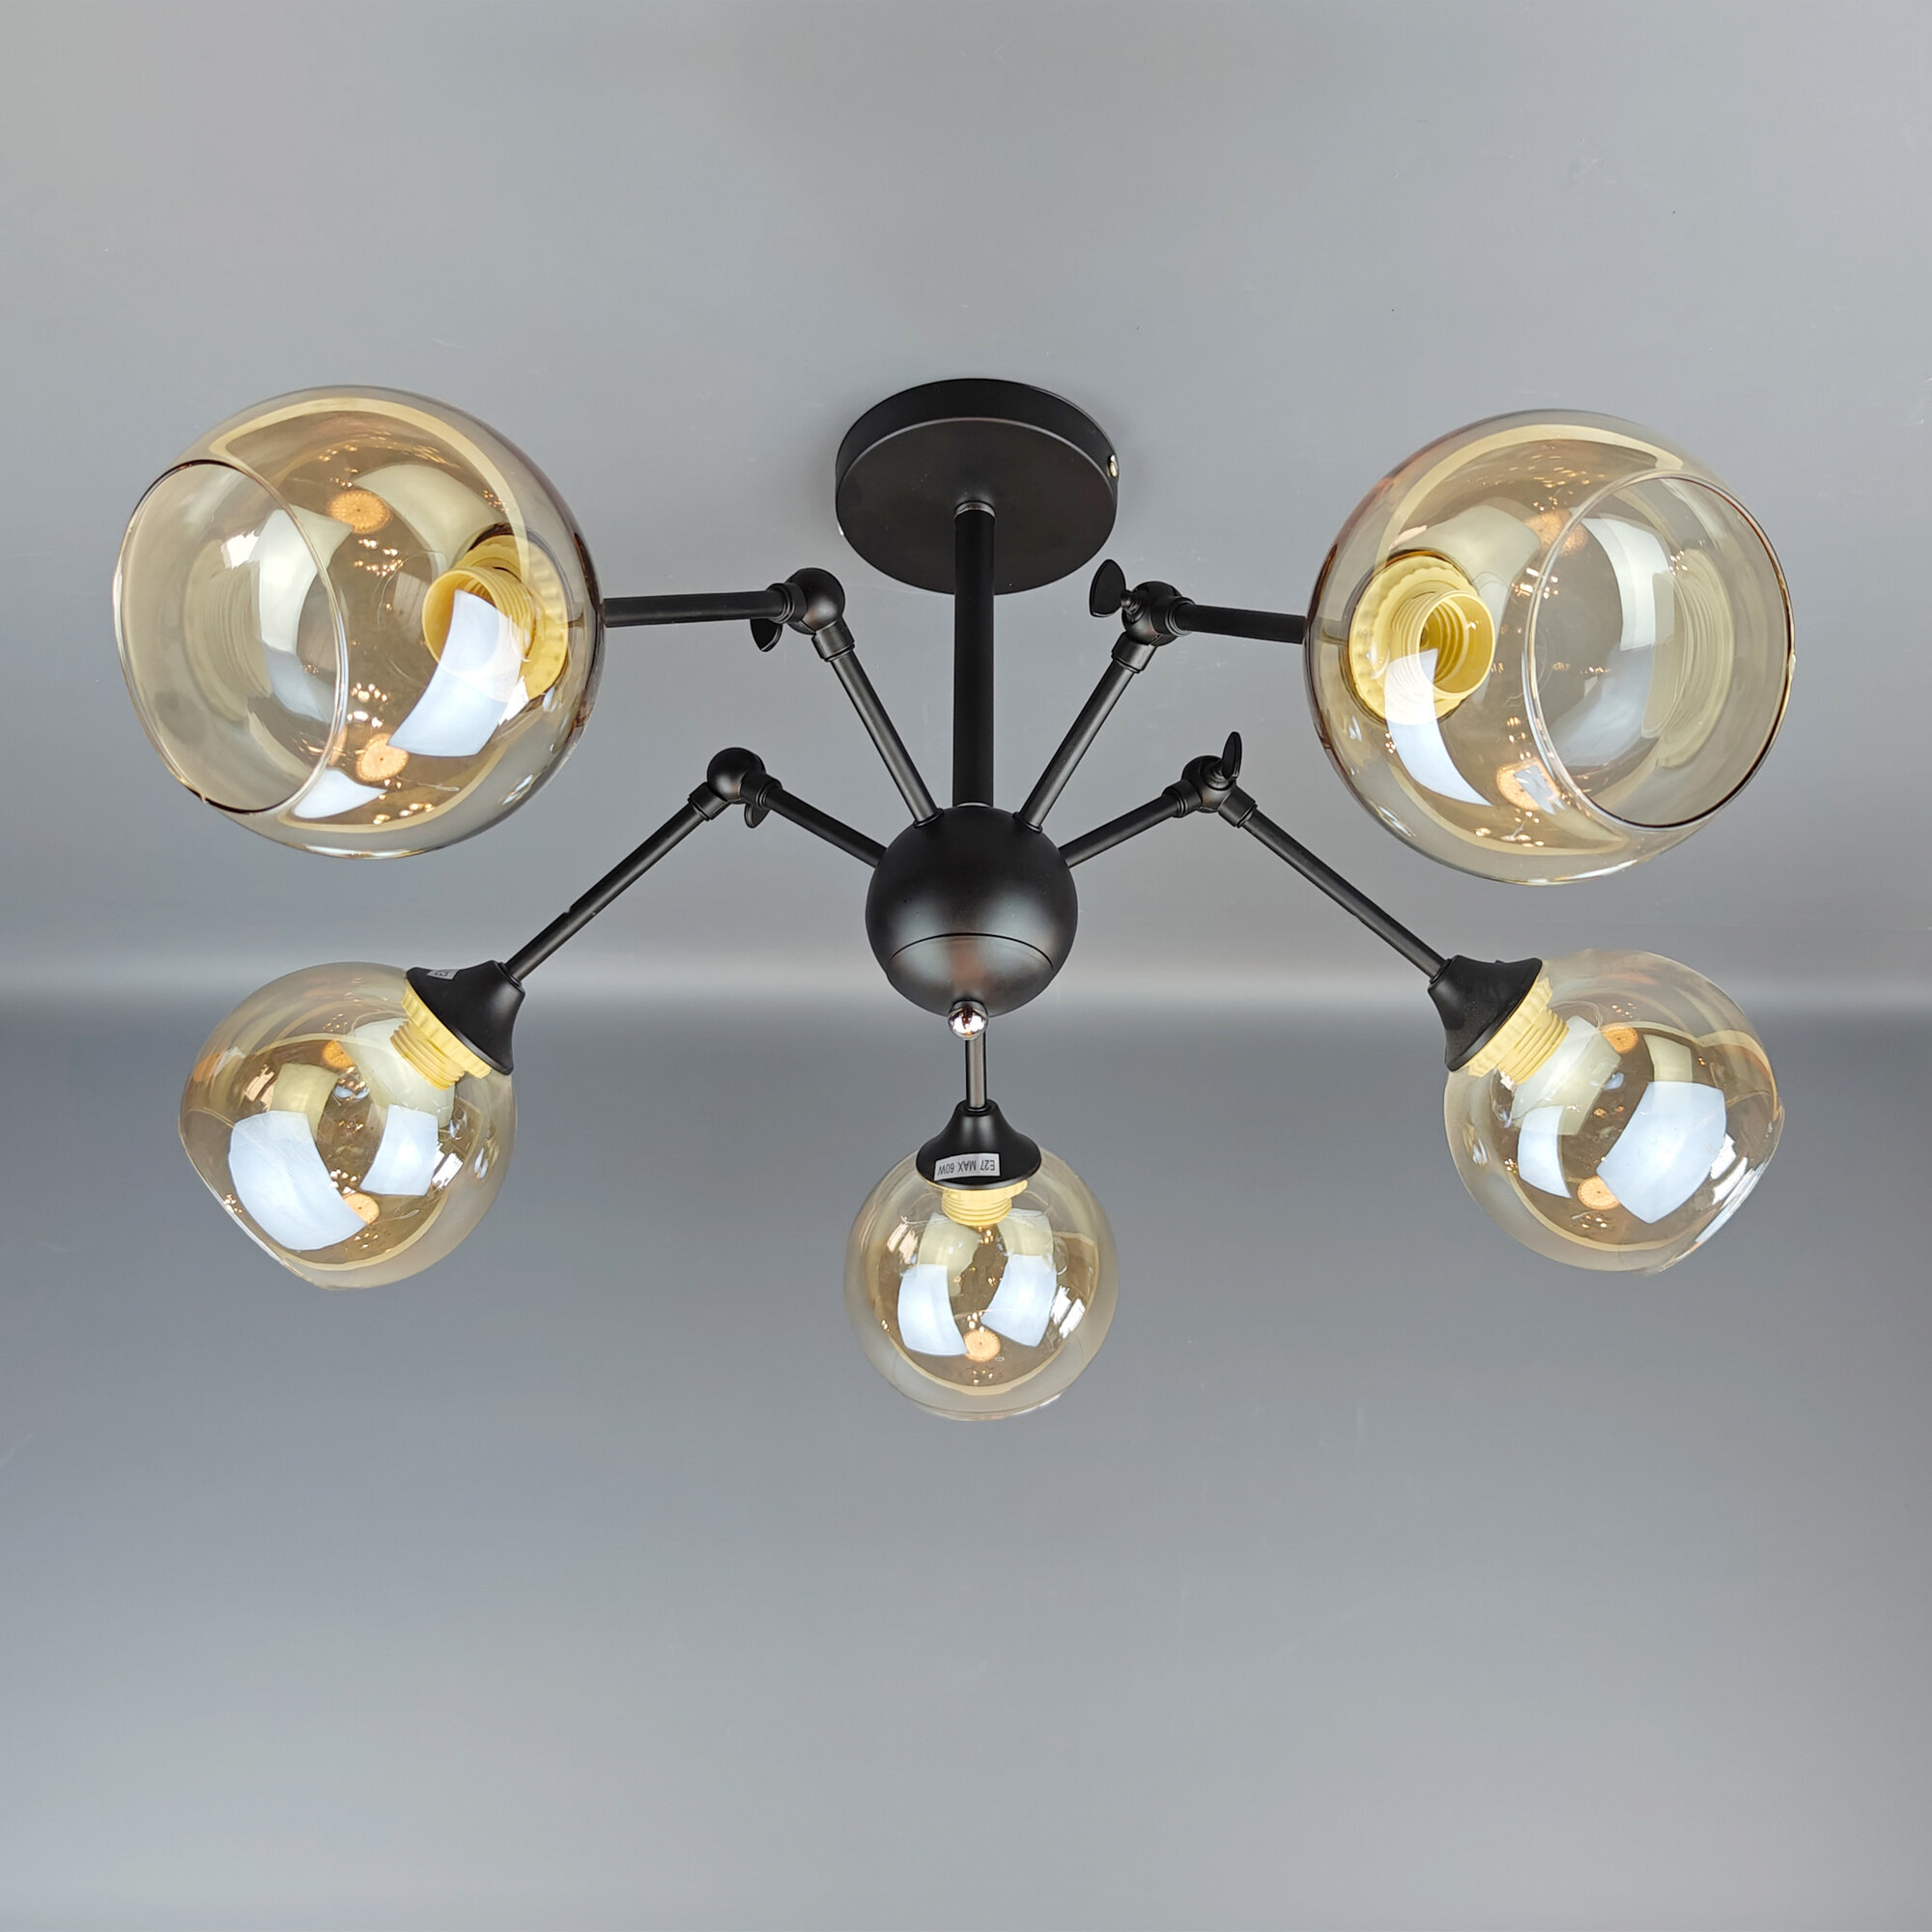 Люстра потолочная, светильник подвесной в стиле лофт JUPITER LIGHTING MО 85-1136/5, E27, 5х60 Вт